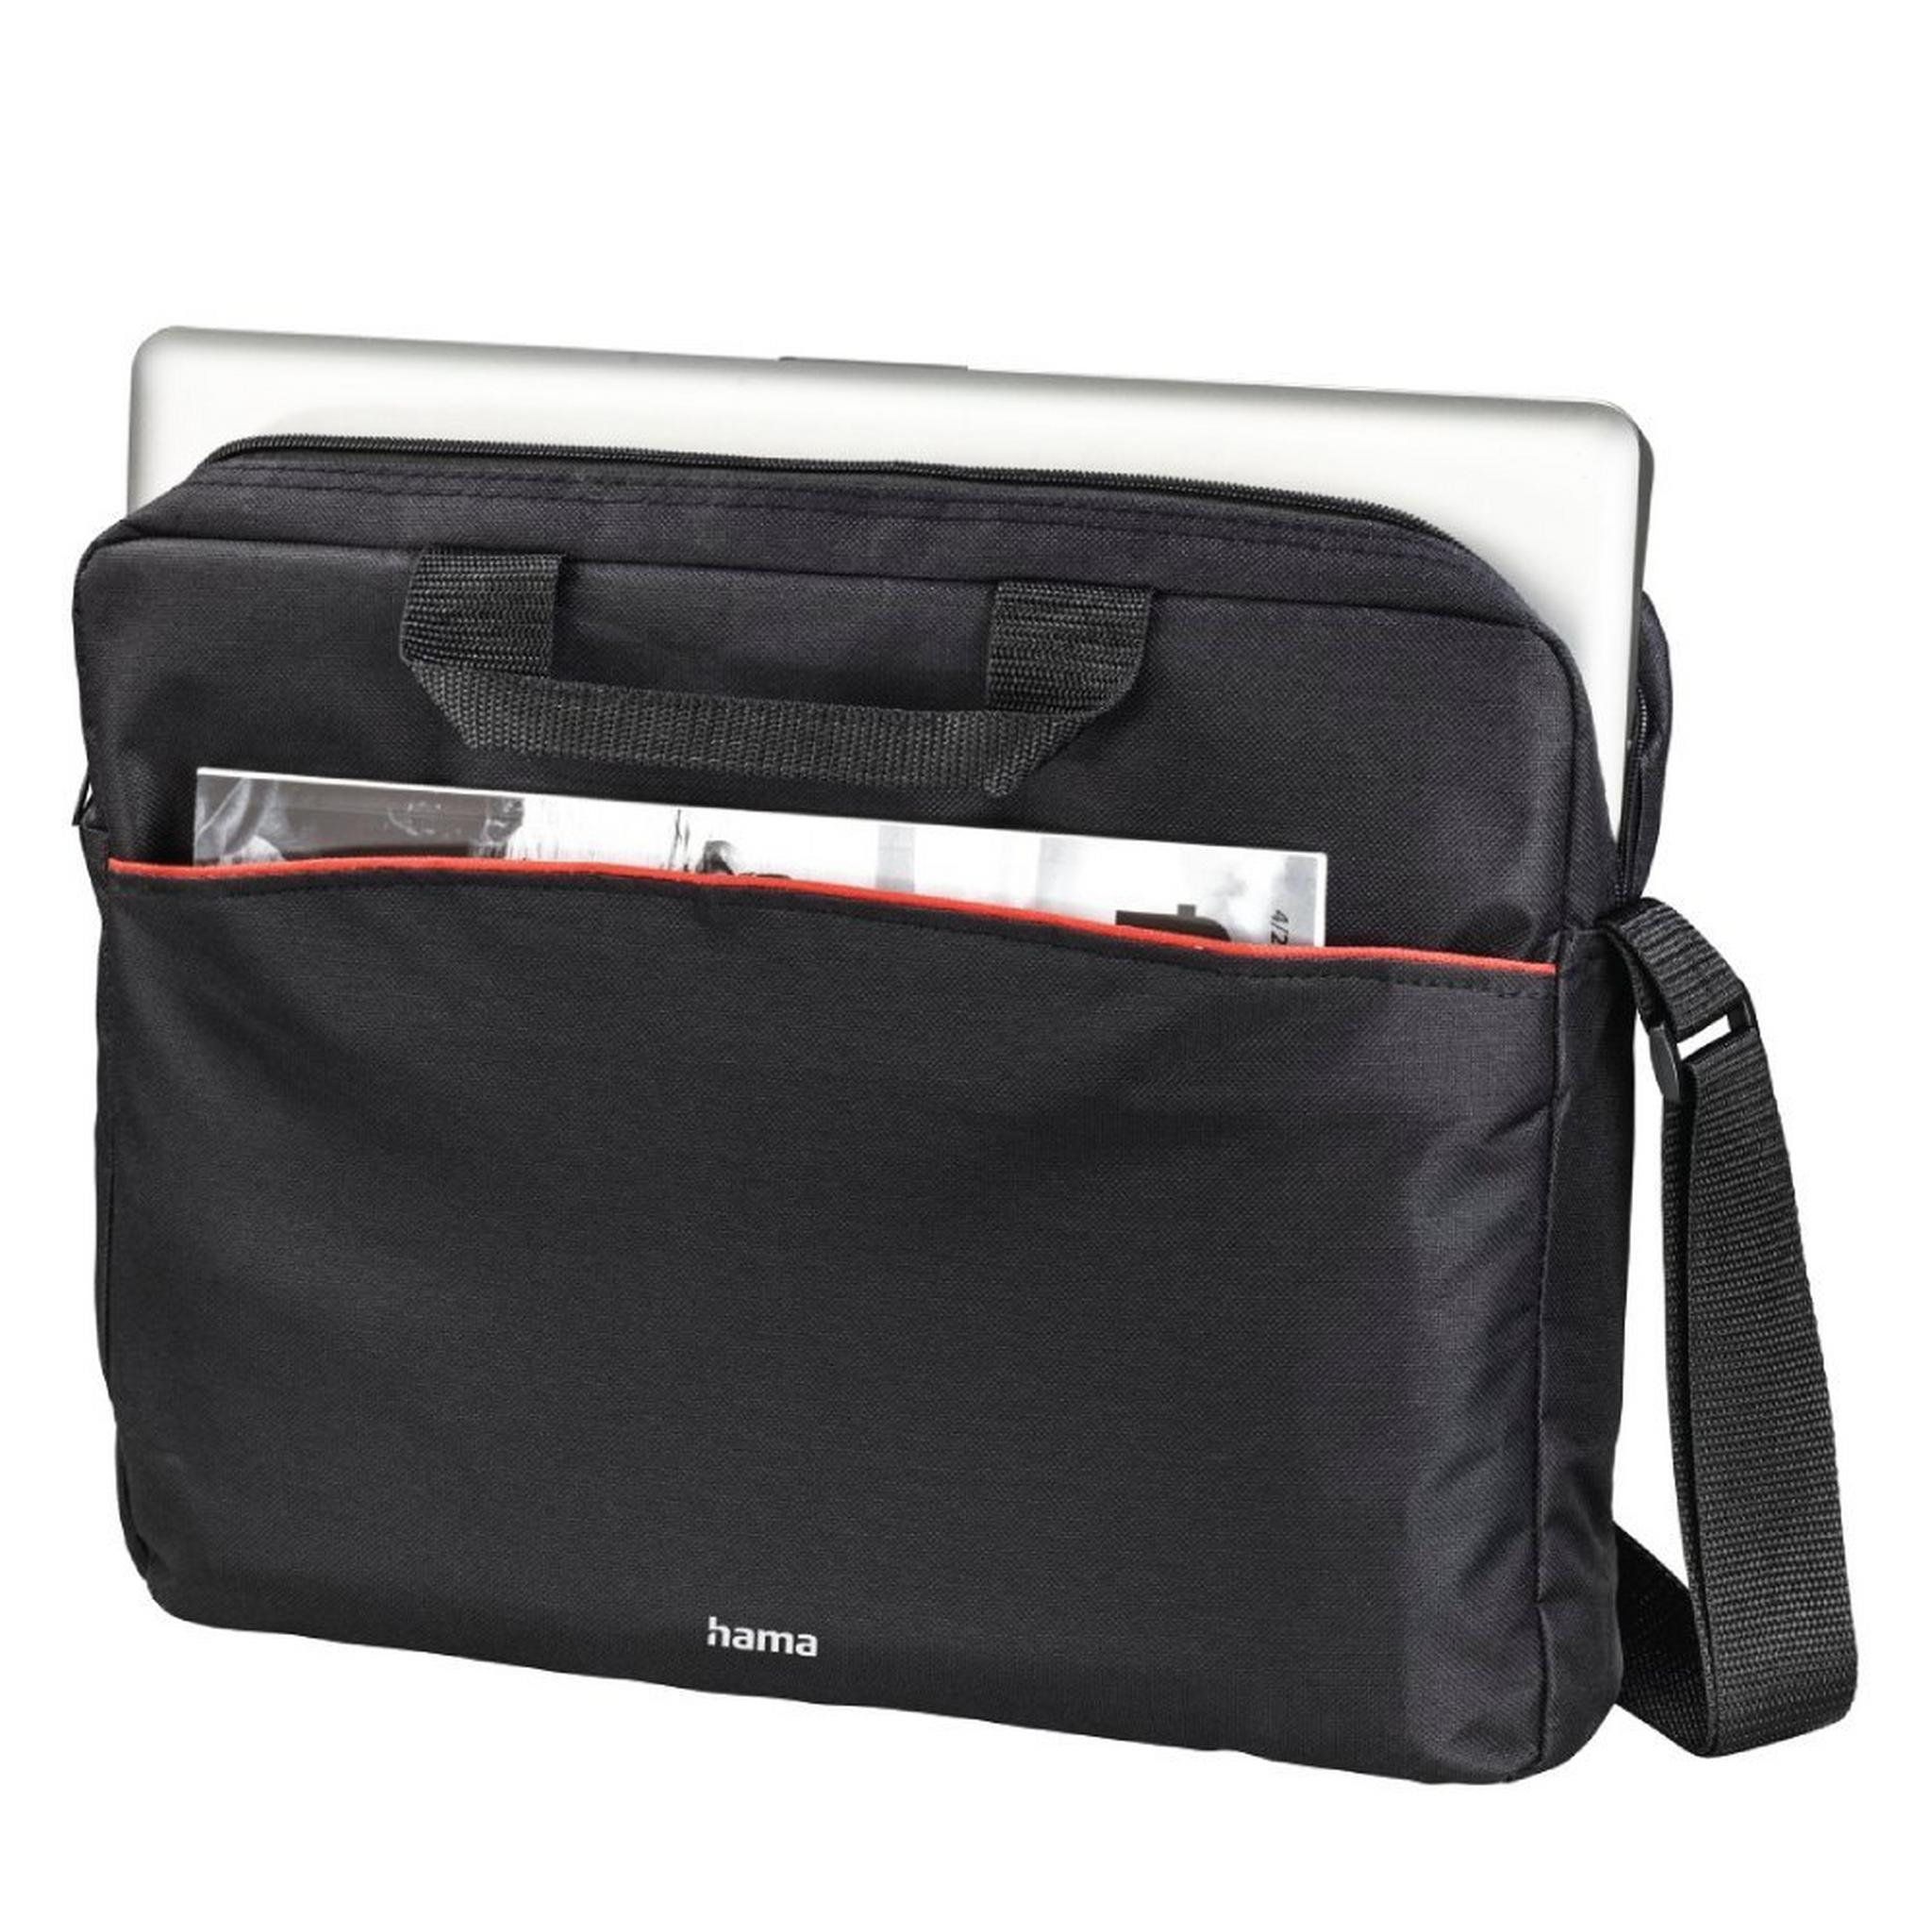 Hama Tortuga Toploader for 15.6-inch Laptop - Black